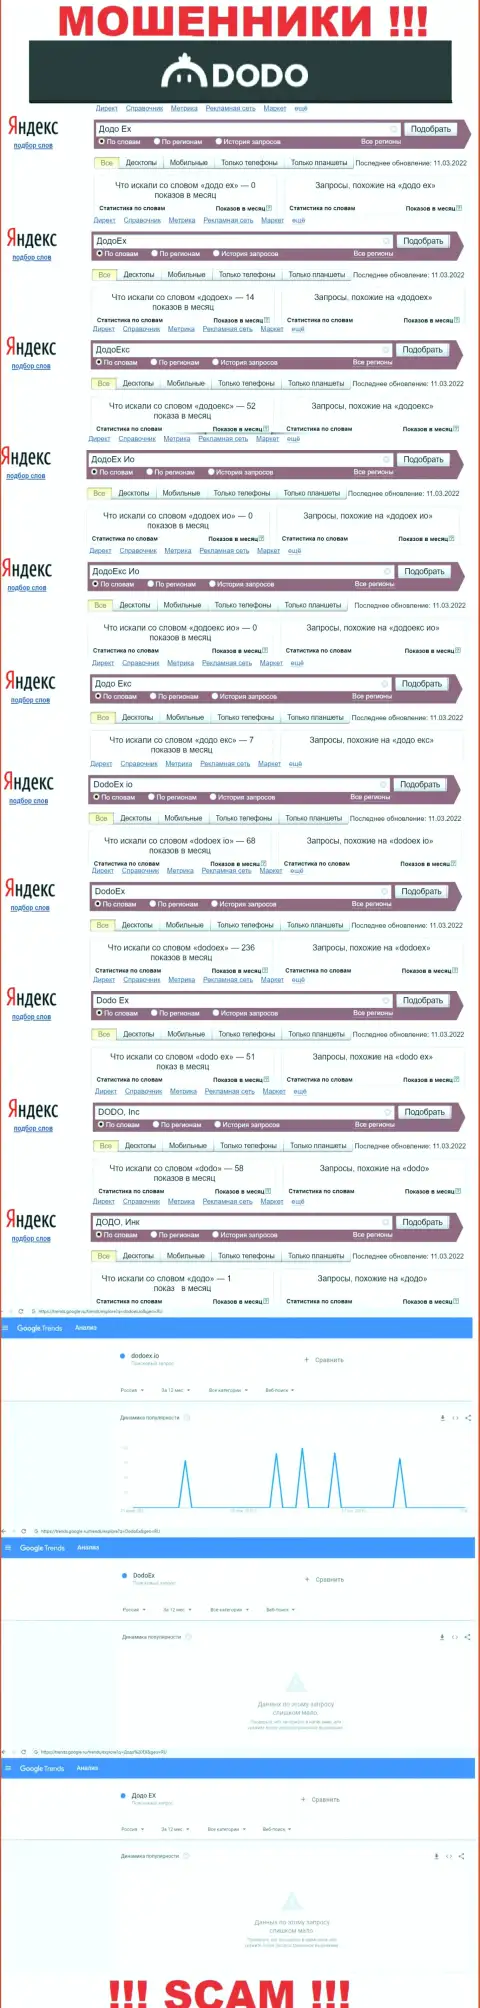 Статистика online запросов по мошенникам DodoEx в поисковиках всемирной сети Интернет